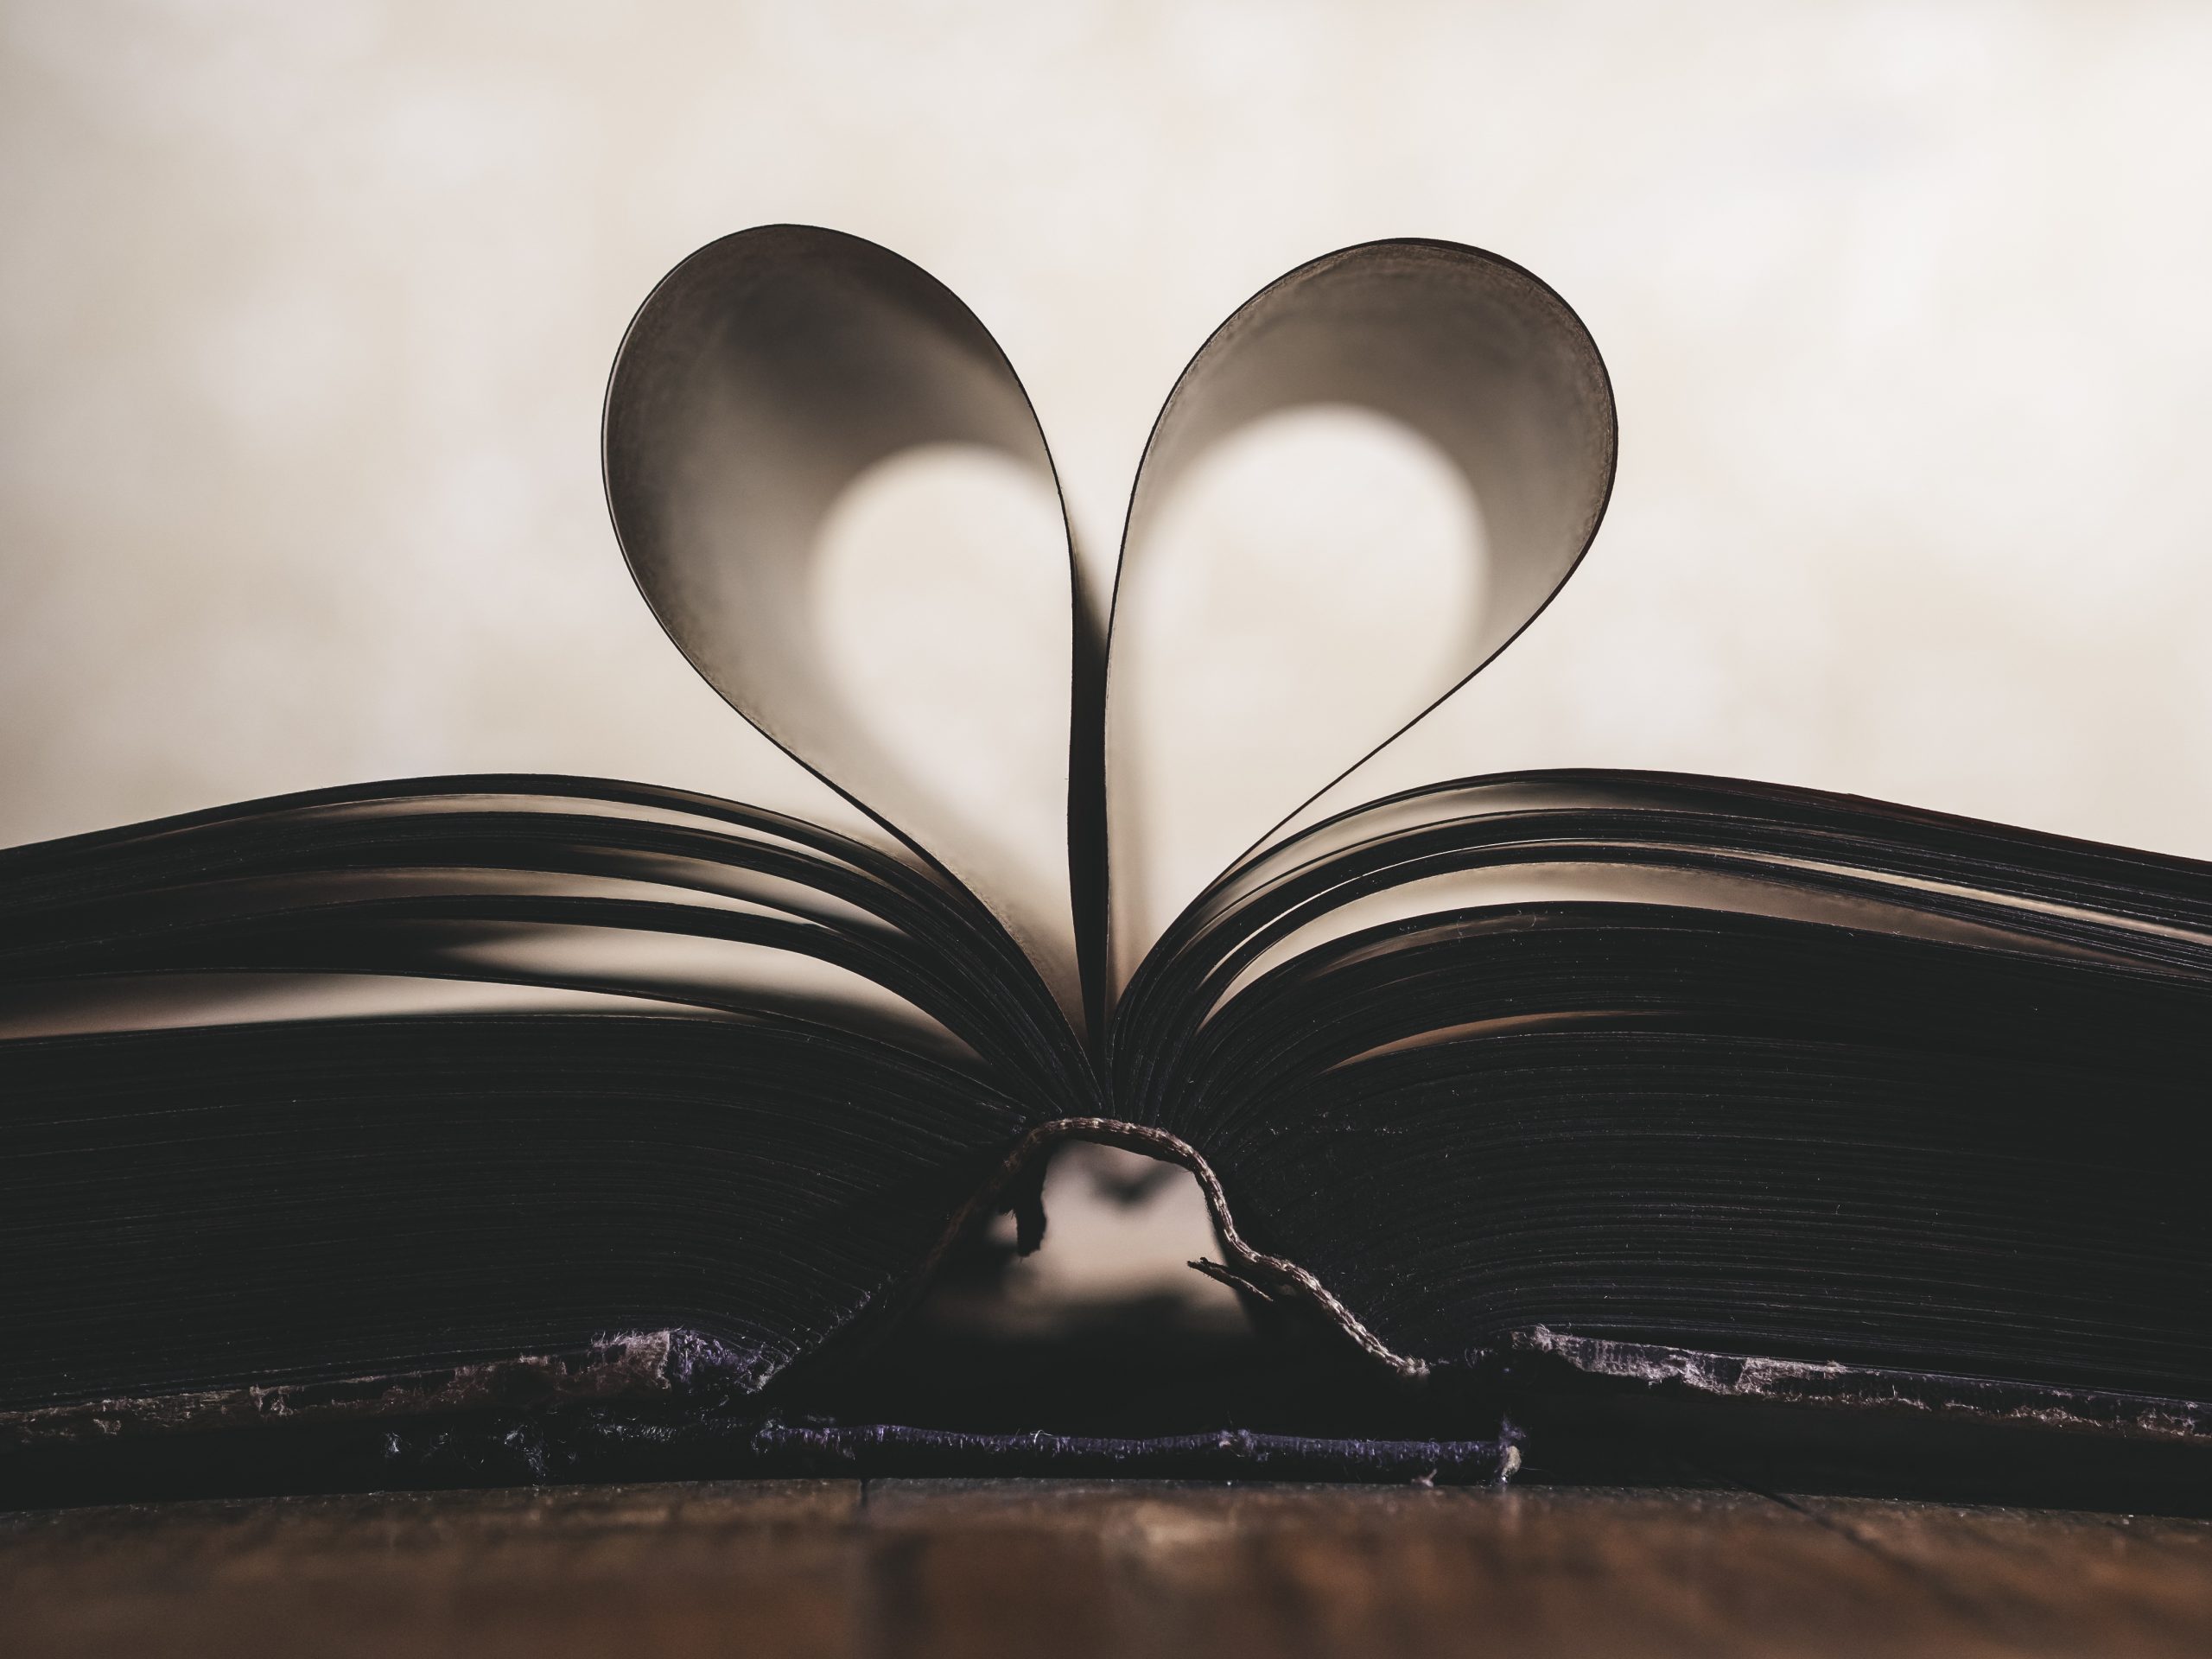 Ein Buch liegt offen auf einem Tisch, man sieht es im Profil. Zwei Seiten bliden ein Herz.